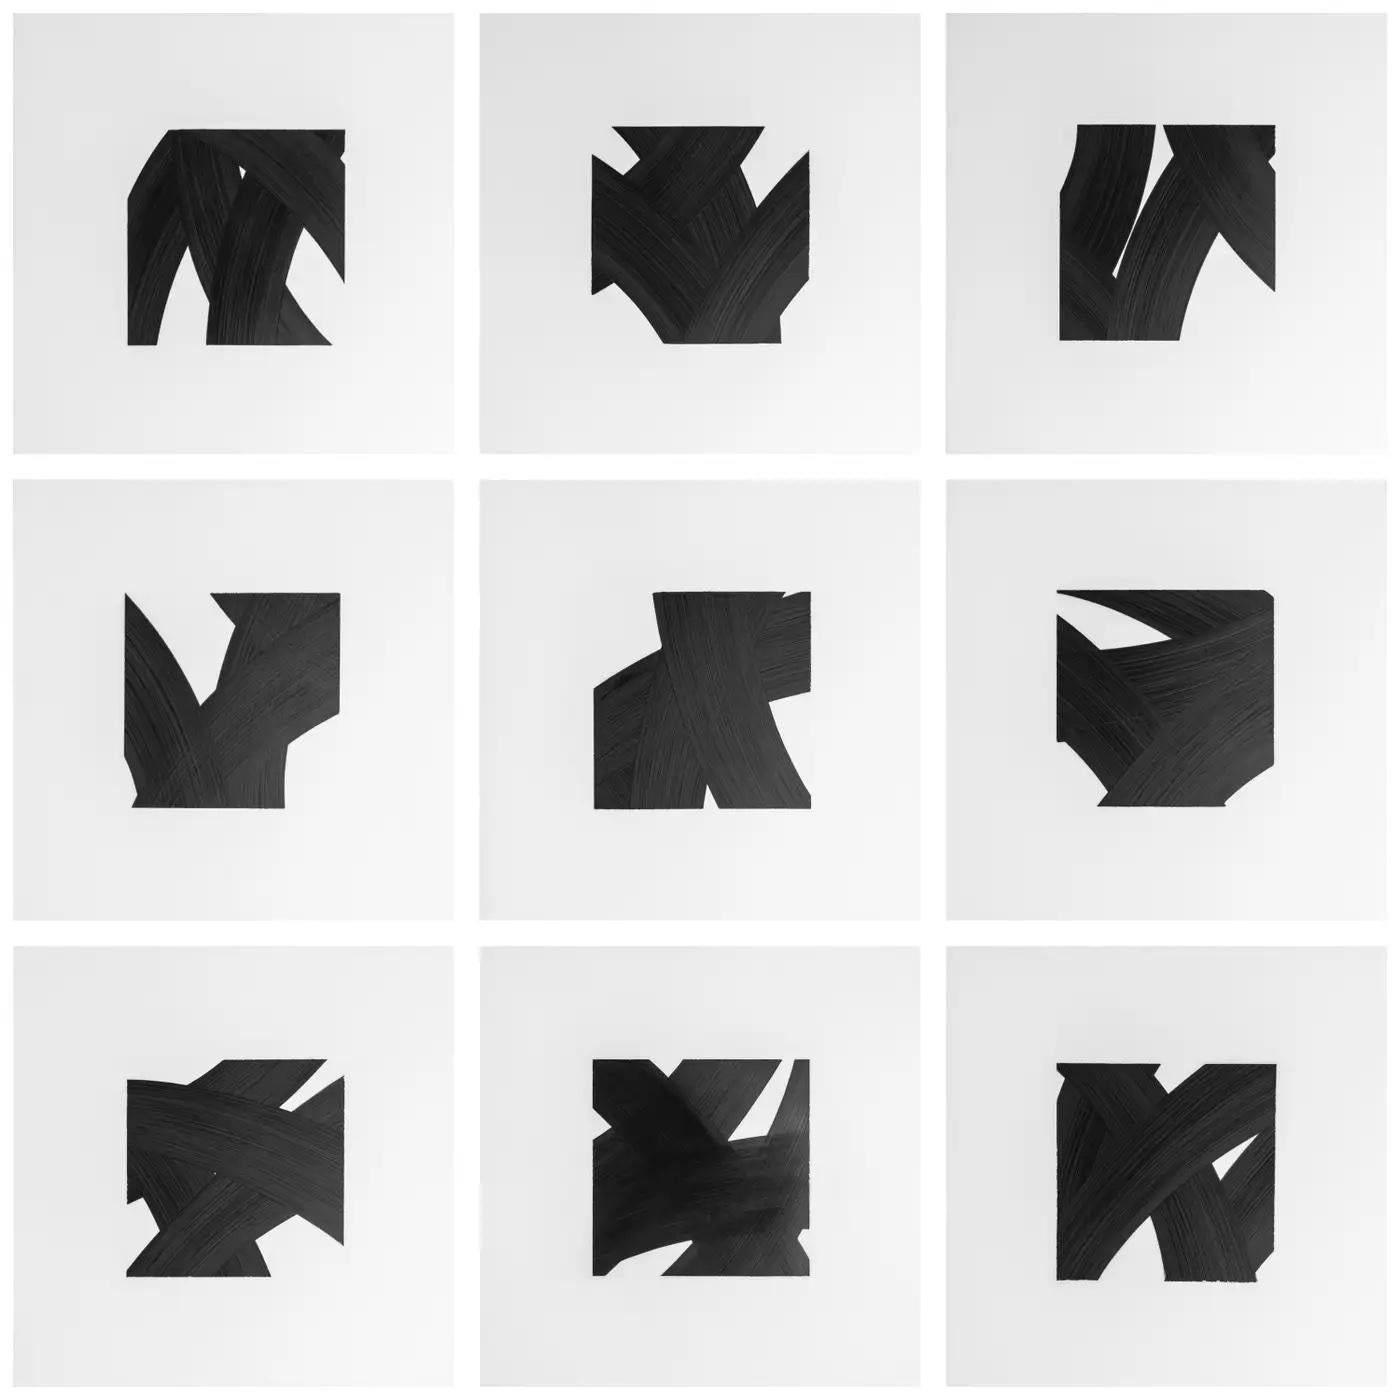 Die Zeichnungen des zeitgenössischen New Yorker Künstlers Patrick Carrara mit schwarzer Tinte auf Mylar entstanden 2016 - 2017. Dies ist seine neueste Serie Appearance, die er vor zehn Jahren begonnen hat und die ebenfalls nach Nummern